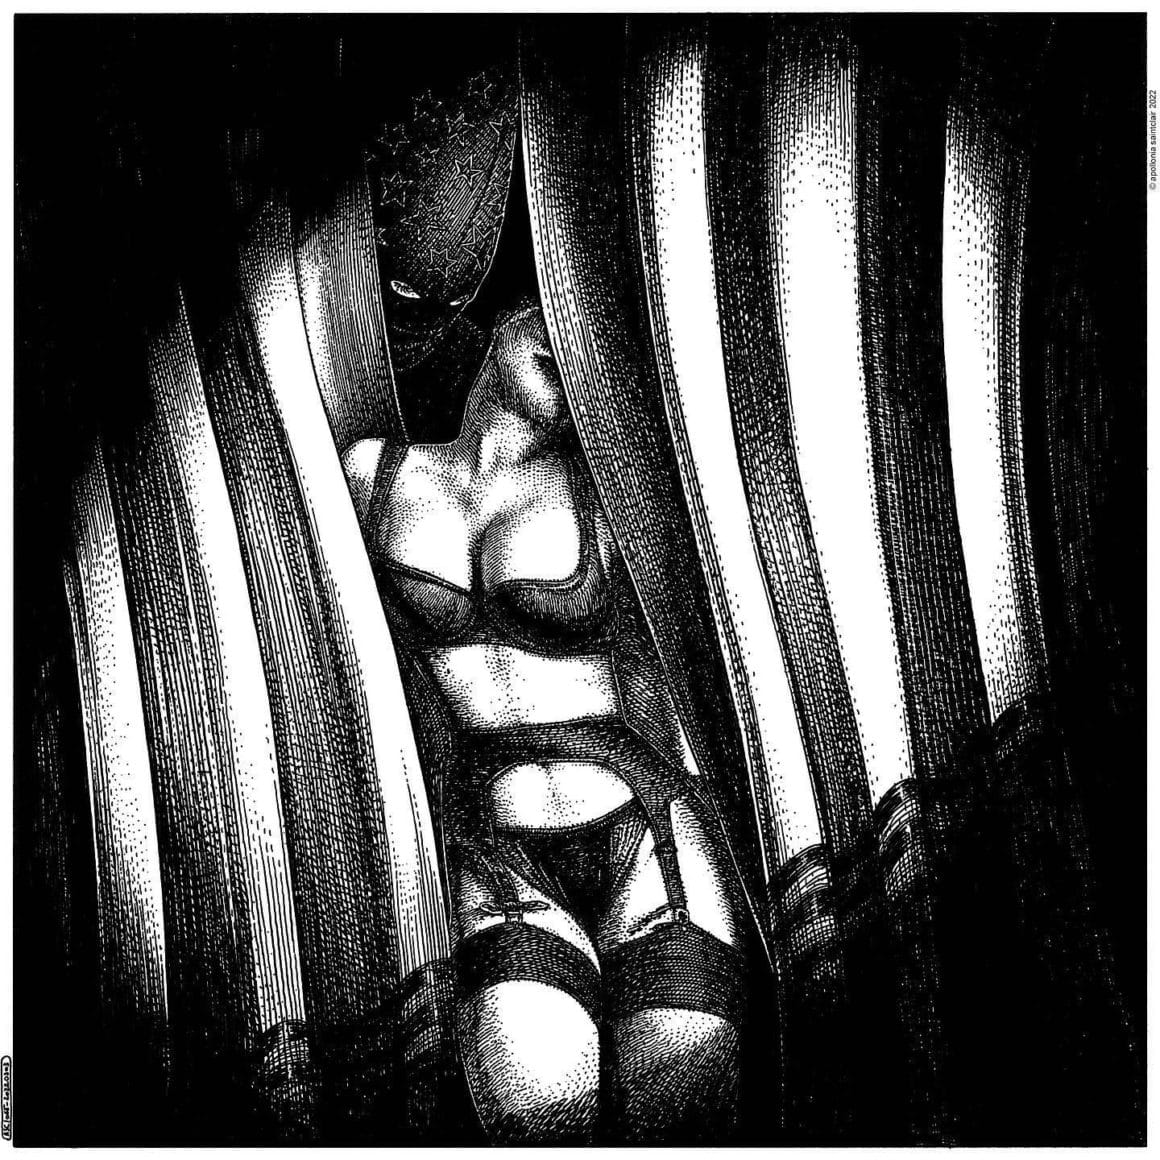 Femme en sous-vêtements enlisée dans tes rideaux (dessin en noir et blanc)